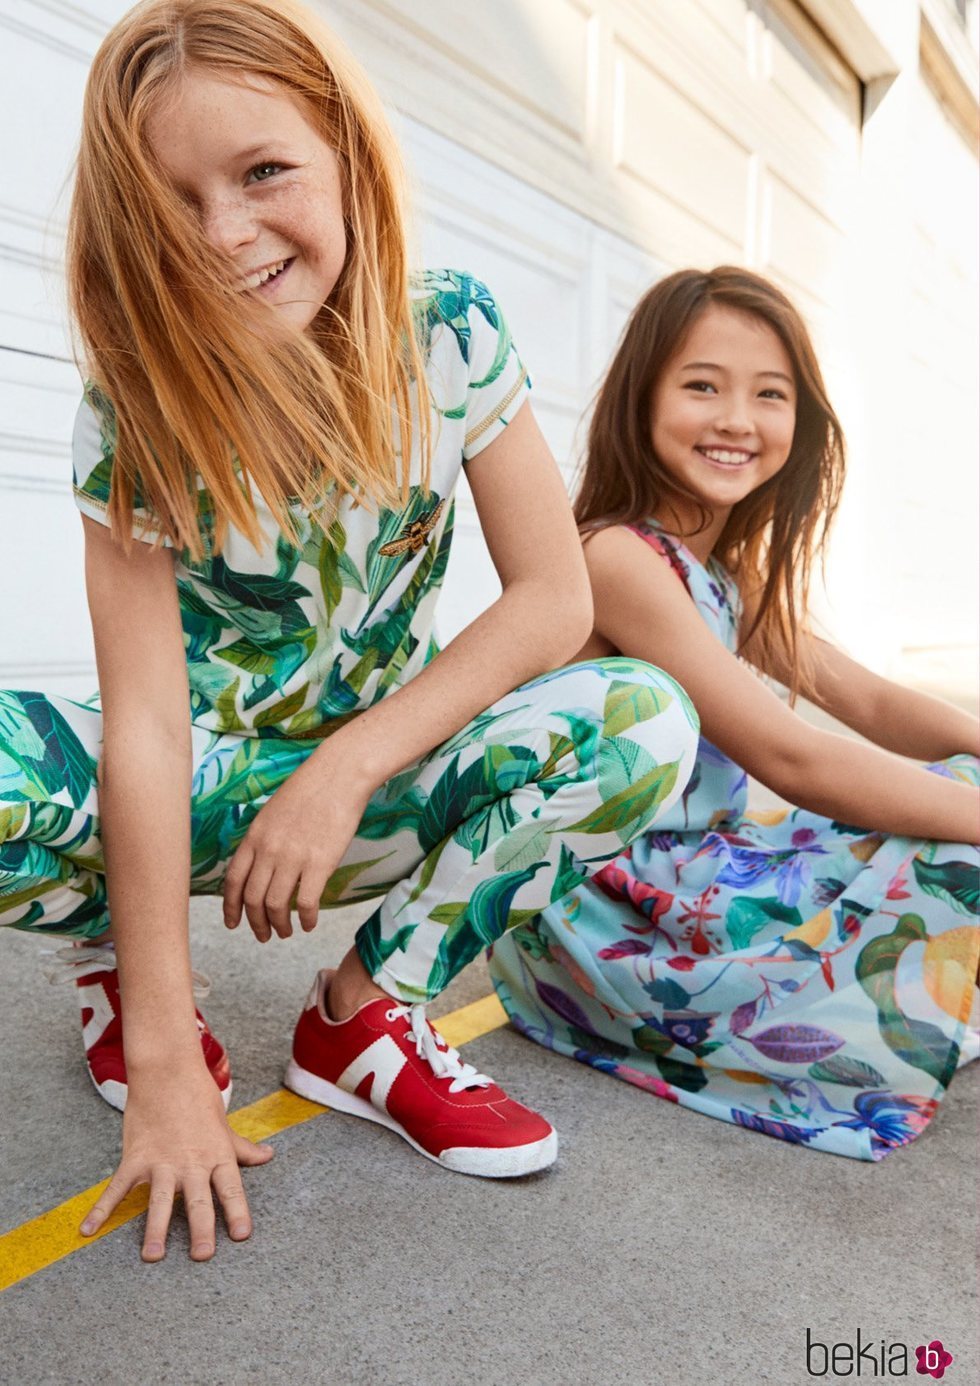 Nueva exclusiva ropa infantil de H&M en colaboración con dos diseñadores gráficos - Galería en Bekia